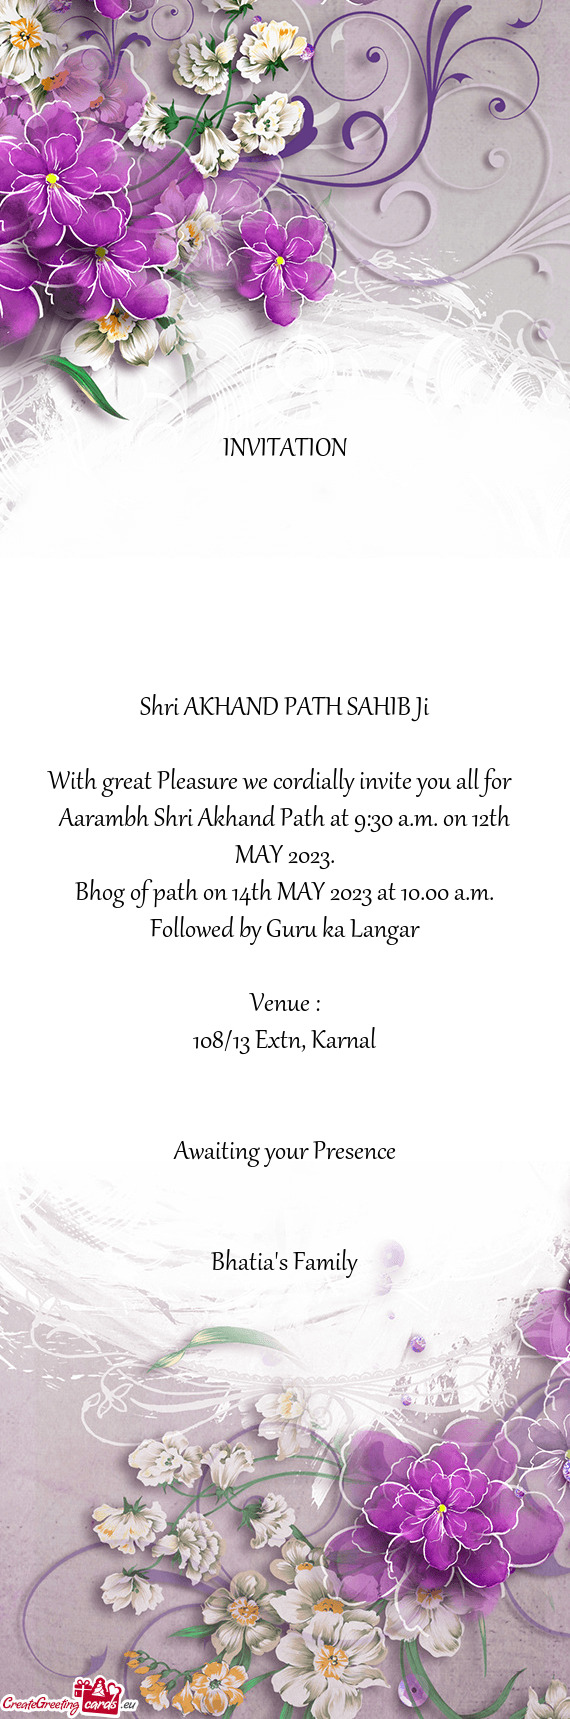 Aarambh Shri Akhand Path at 9:30 a.m. on 12th MAY 2023